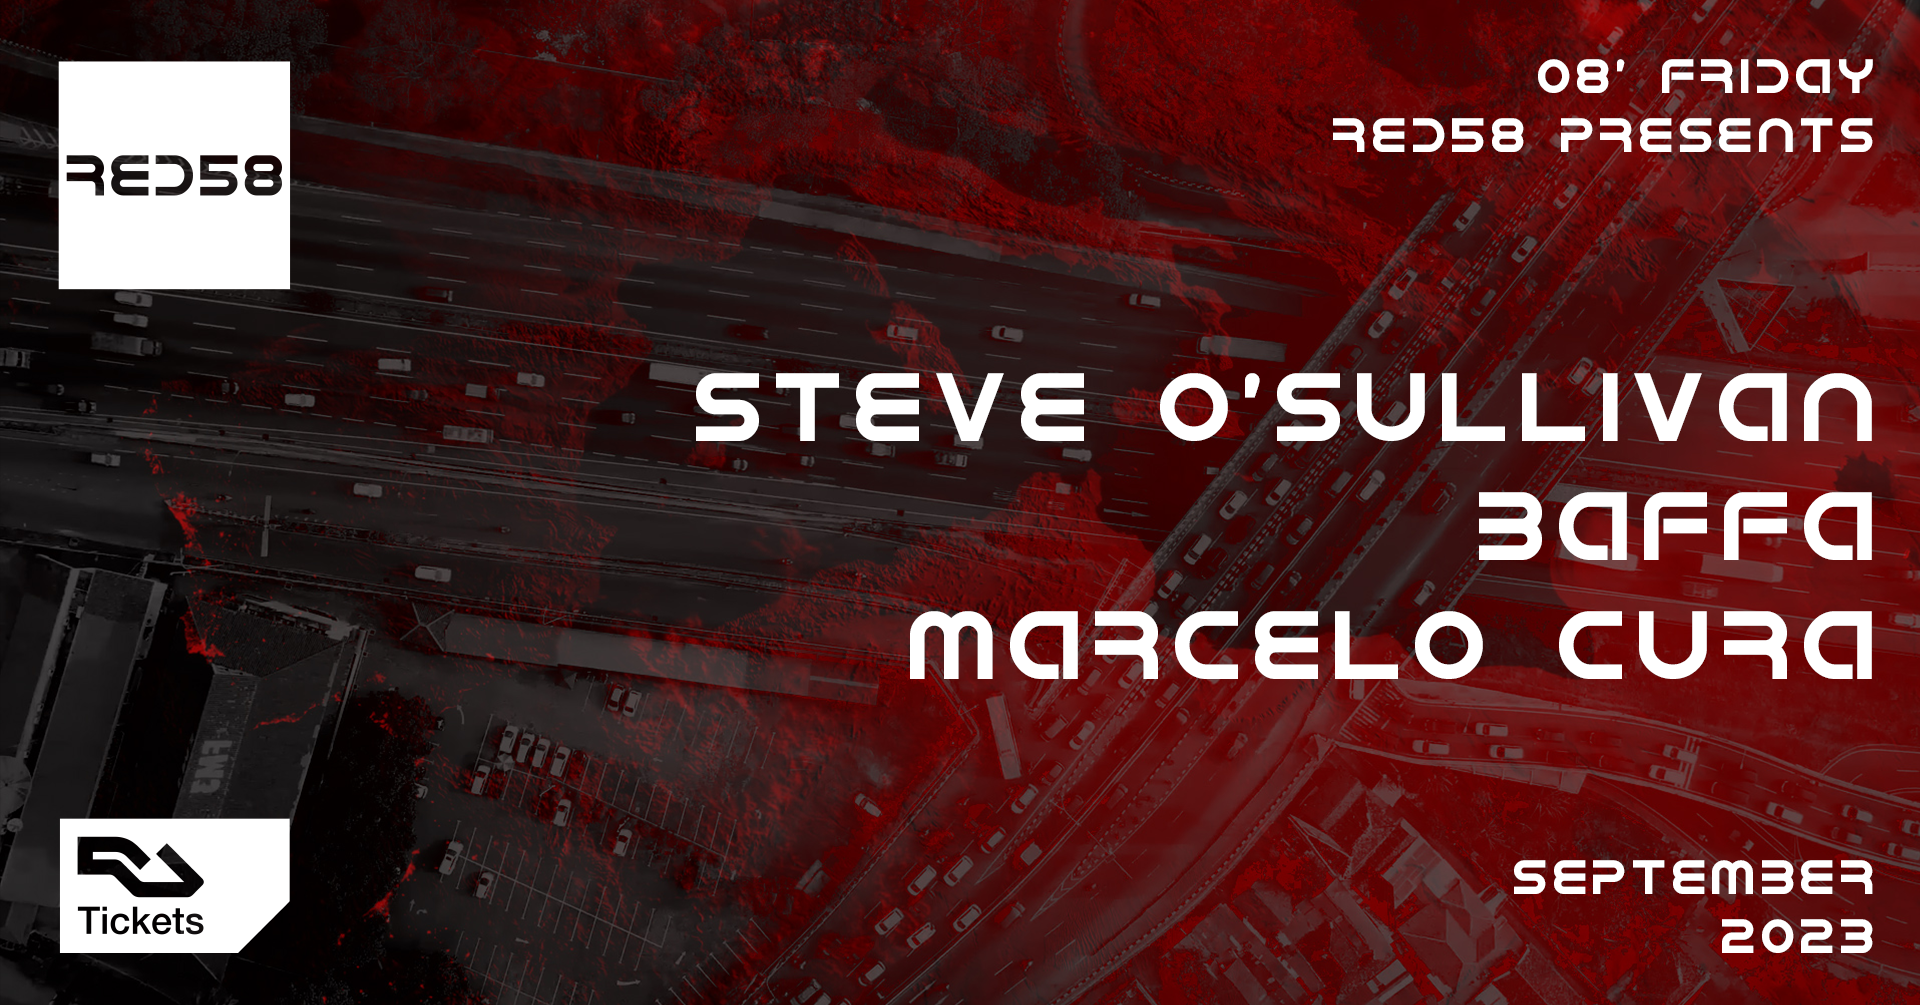 RED58 presents Steve O'Sullivan, Baffa & Marcelo Cura - フライヤー表